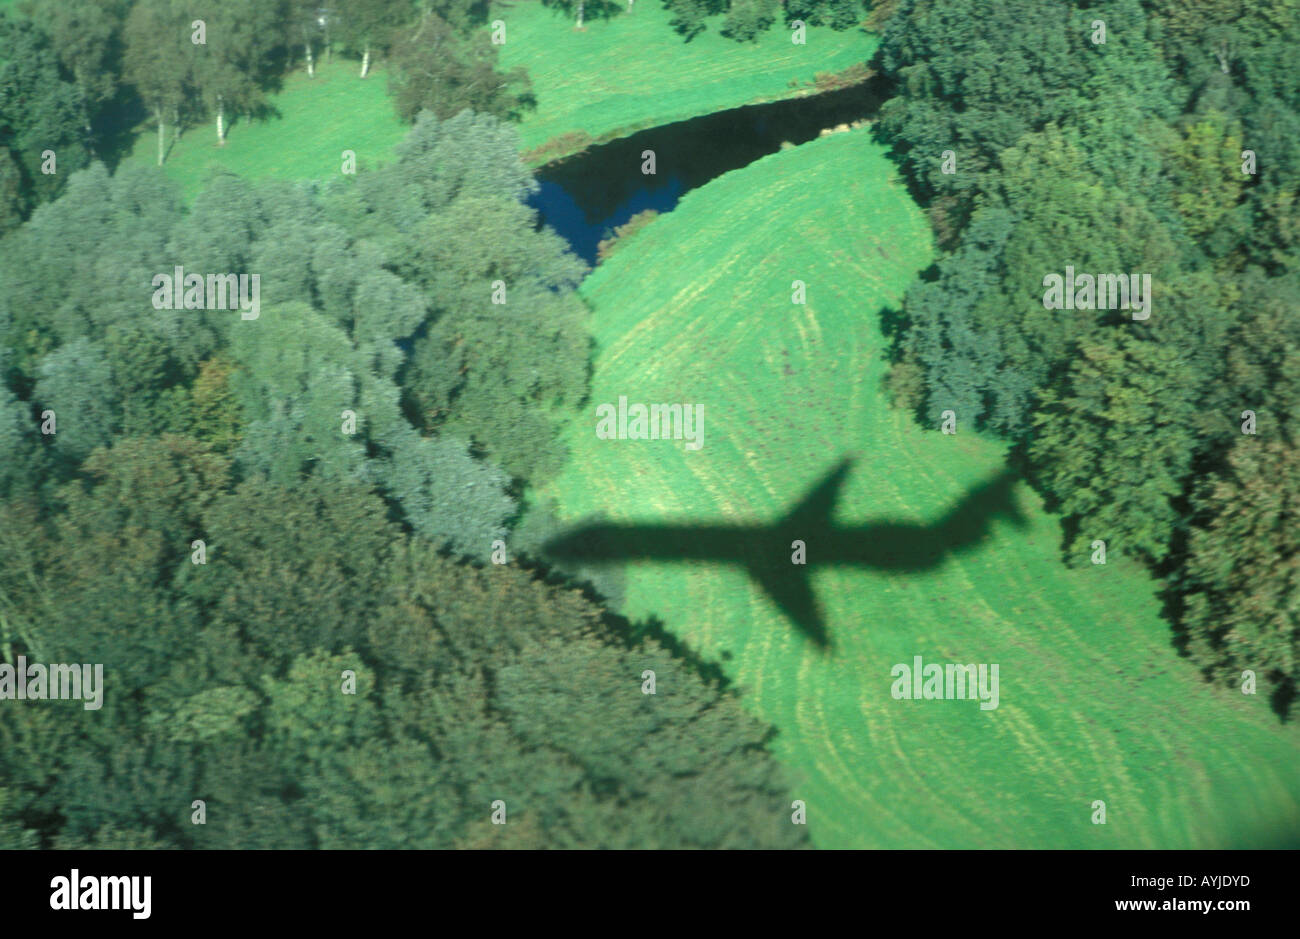 L'ombra di un piano di atterraggio su Aeroporto Schiphol sull'Amsterdamse Bos Foto Stock